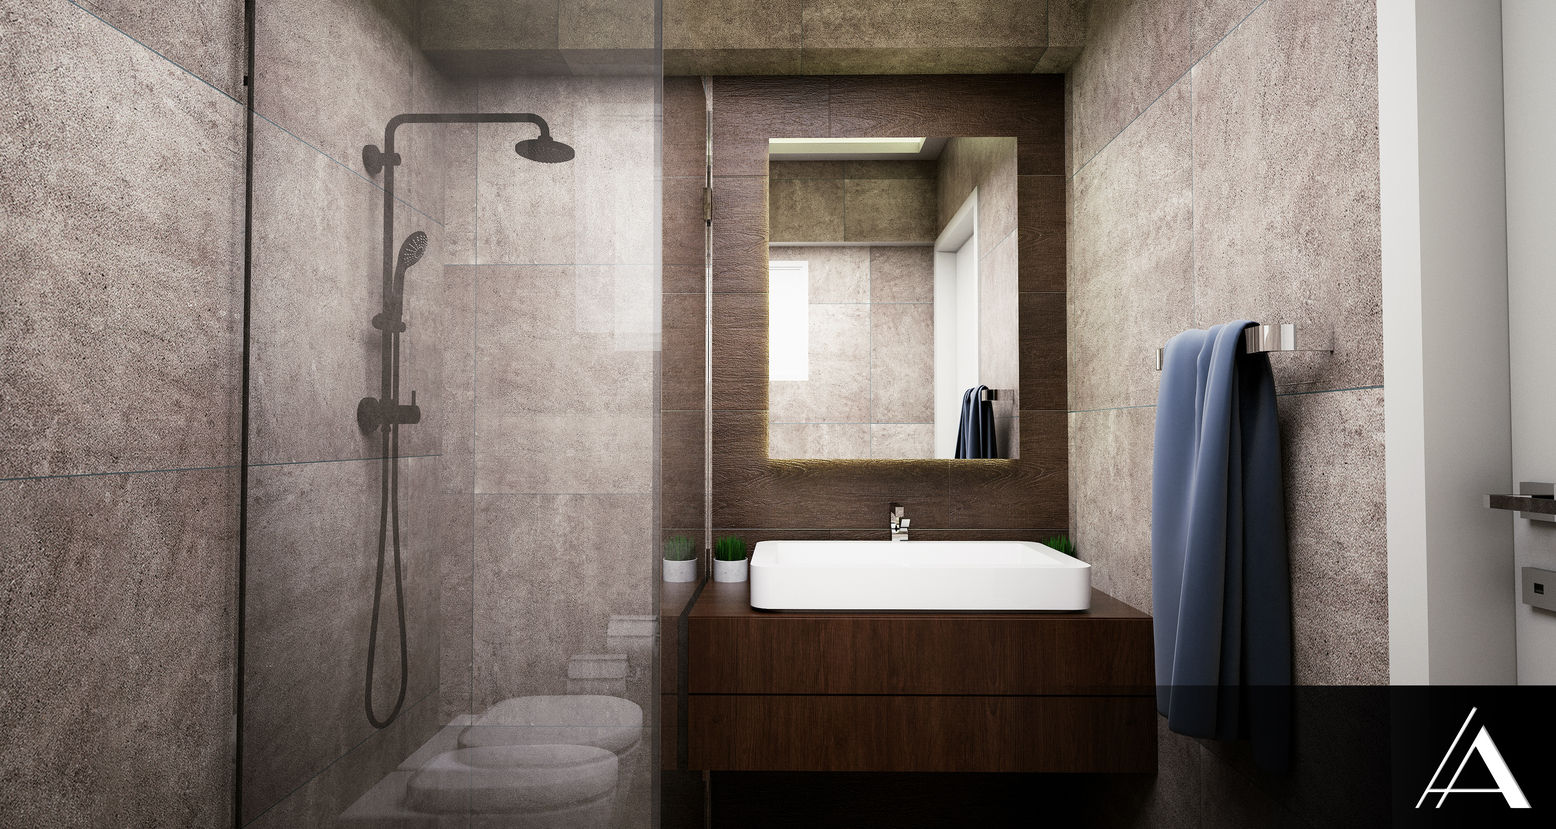 MELDA - SERDAR YILMAZ / VİLLA PROJESİ, IN•AR Design / İç Mimarlık IN•AR Design / İç Mimarlık Modern bathroom